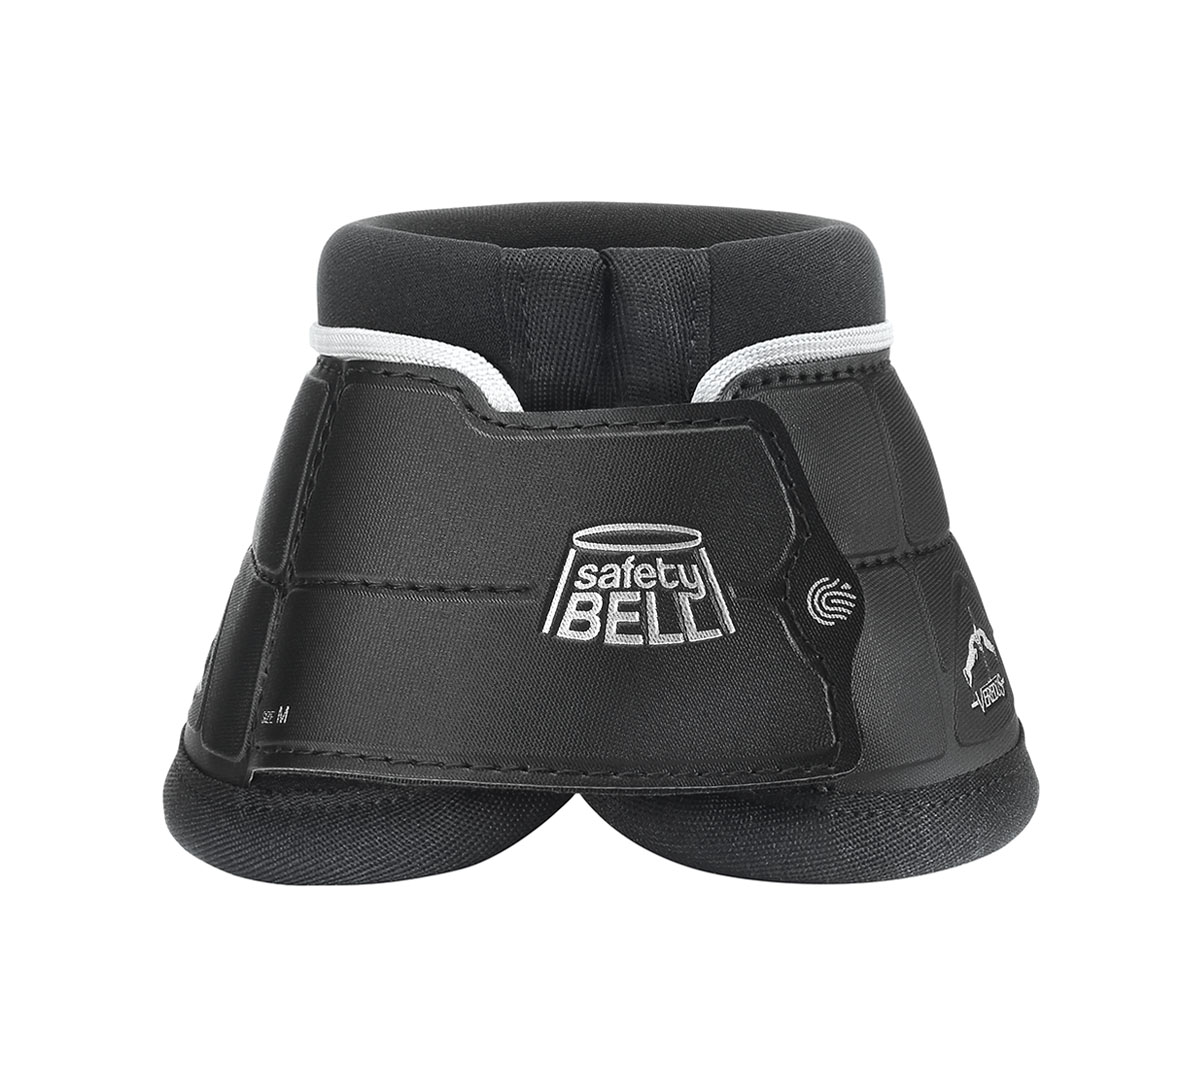 VEREDUS Hufglocken Safety Bell - black - XL - 1